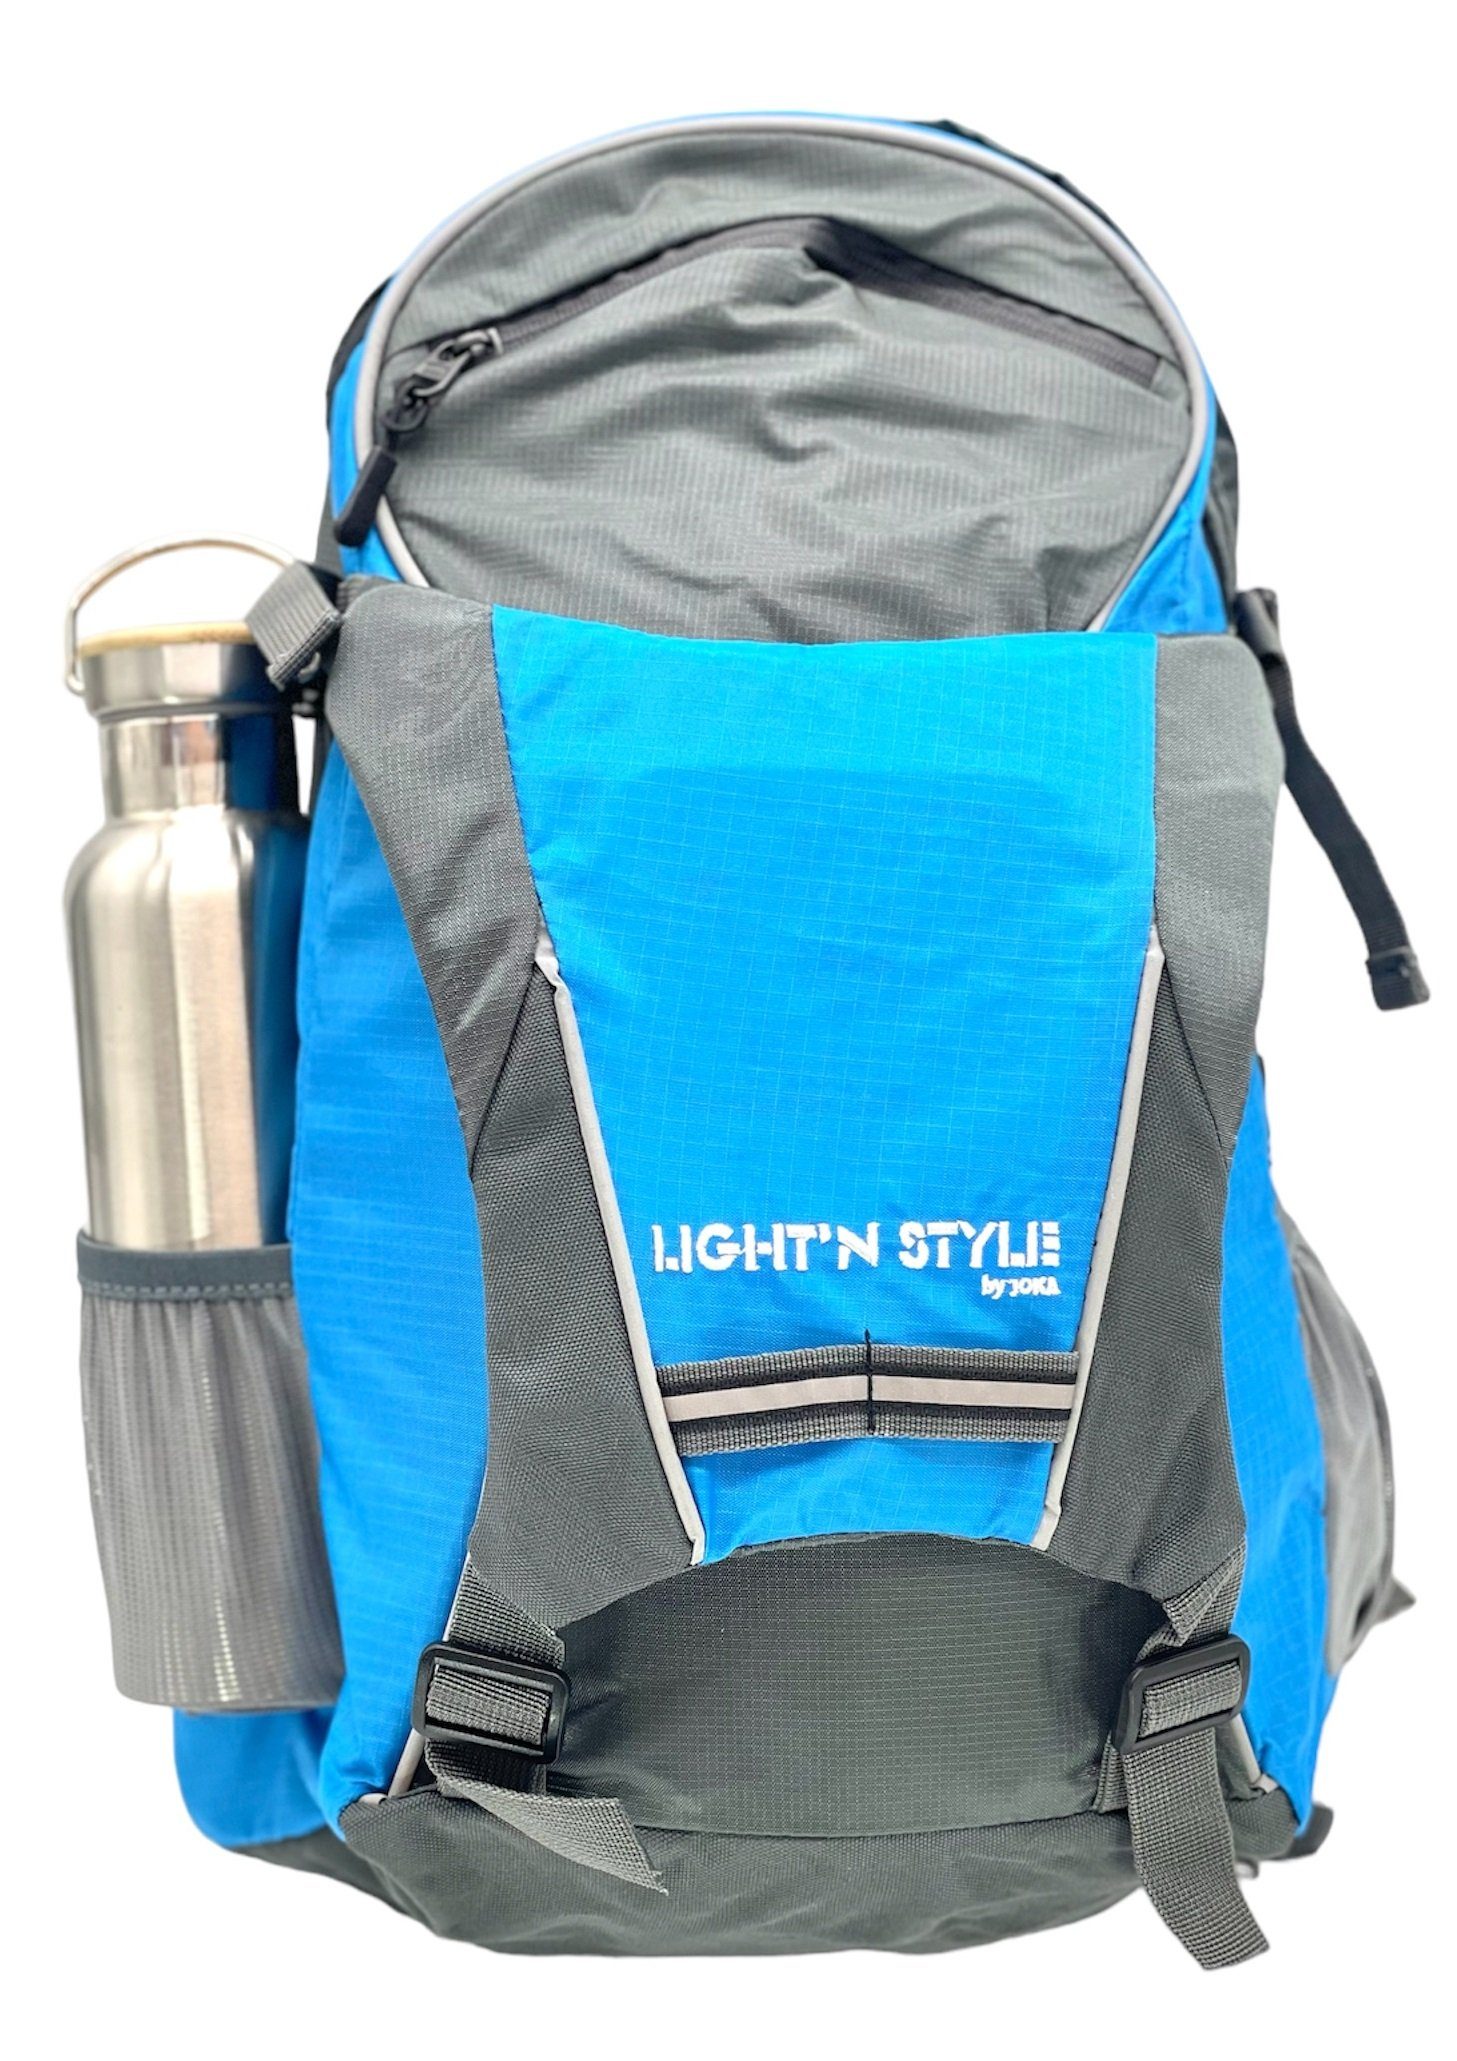 Luna24 simply great ideas... Freizeitrucksack Rucksack mit LED-Richtungsanzeiger und Handsender, 18 Ltr., blau